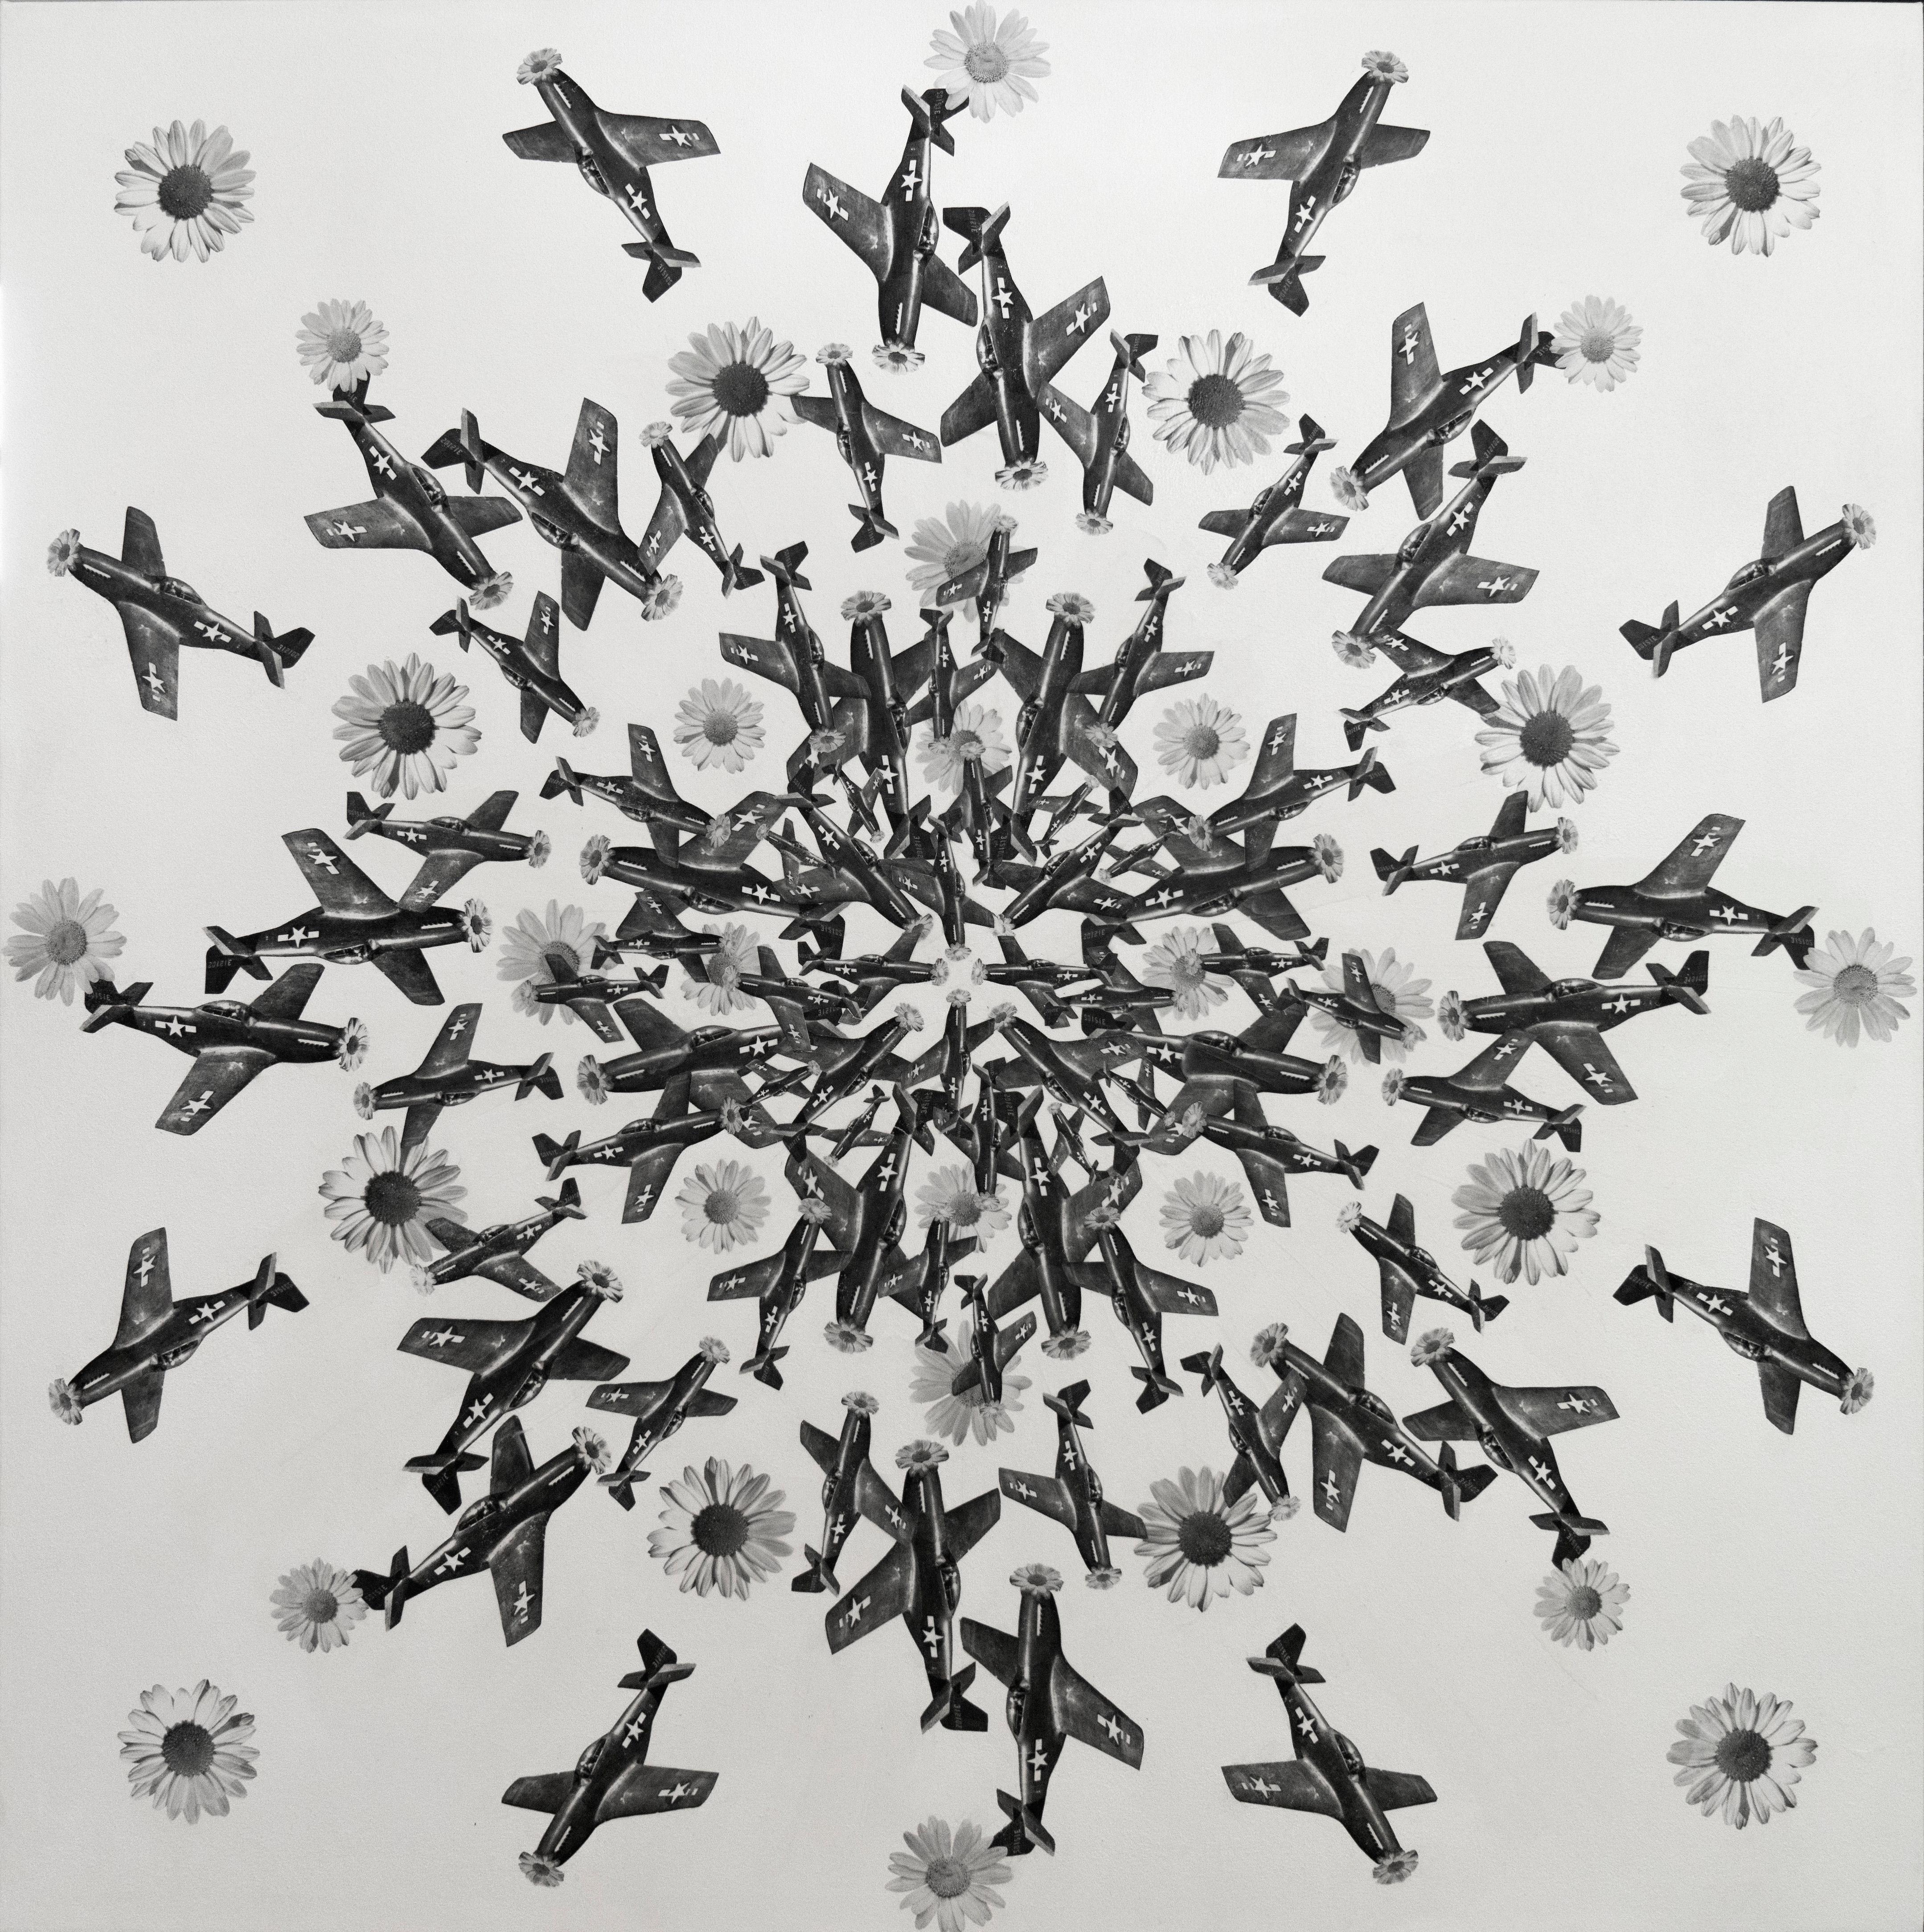 "Mandala de vol libre #3" 48" x 48" pouces par Tetiana Kalivoshko

Collage de médias mixtes

LA COLLECTION DE GUERRE DU PRINTEMPS 
Trouver la lumière et l'espoir en temps de guerre et de désespoir, tel est le message que la collection de printemps